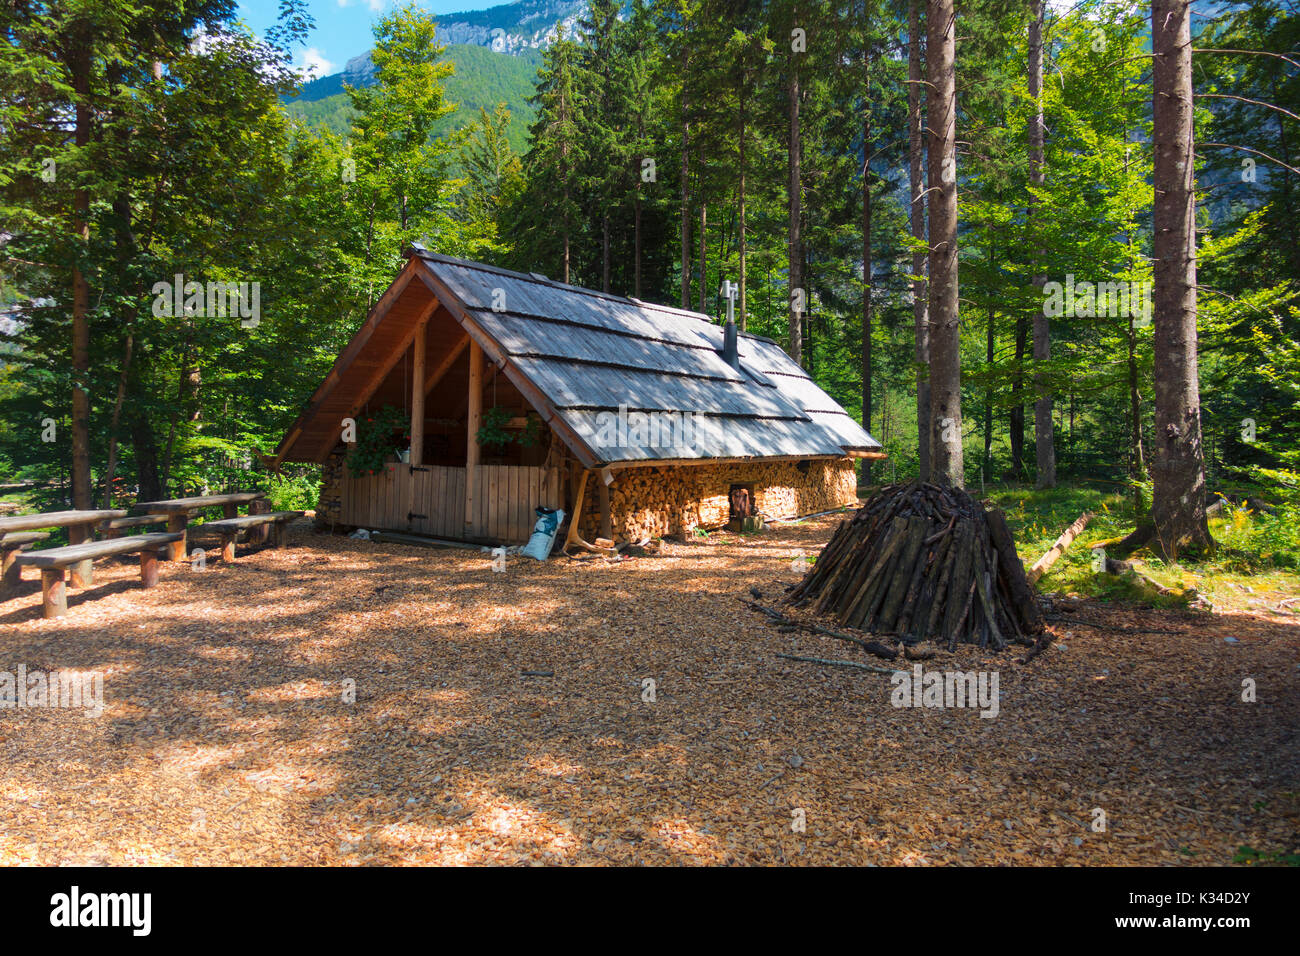 Chalet de montagne, cabane, maison à charbon dans les Alpes, situé dans la région de Robanov kot, la Slovénie, la randonnée et escalade lieu populaire avec picturescue view Banque D'Images